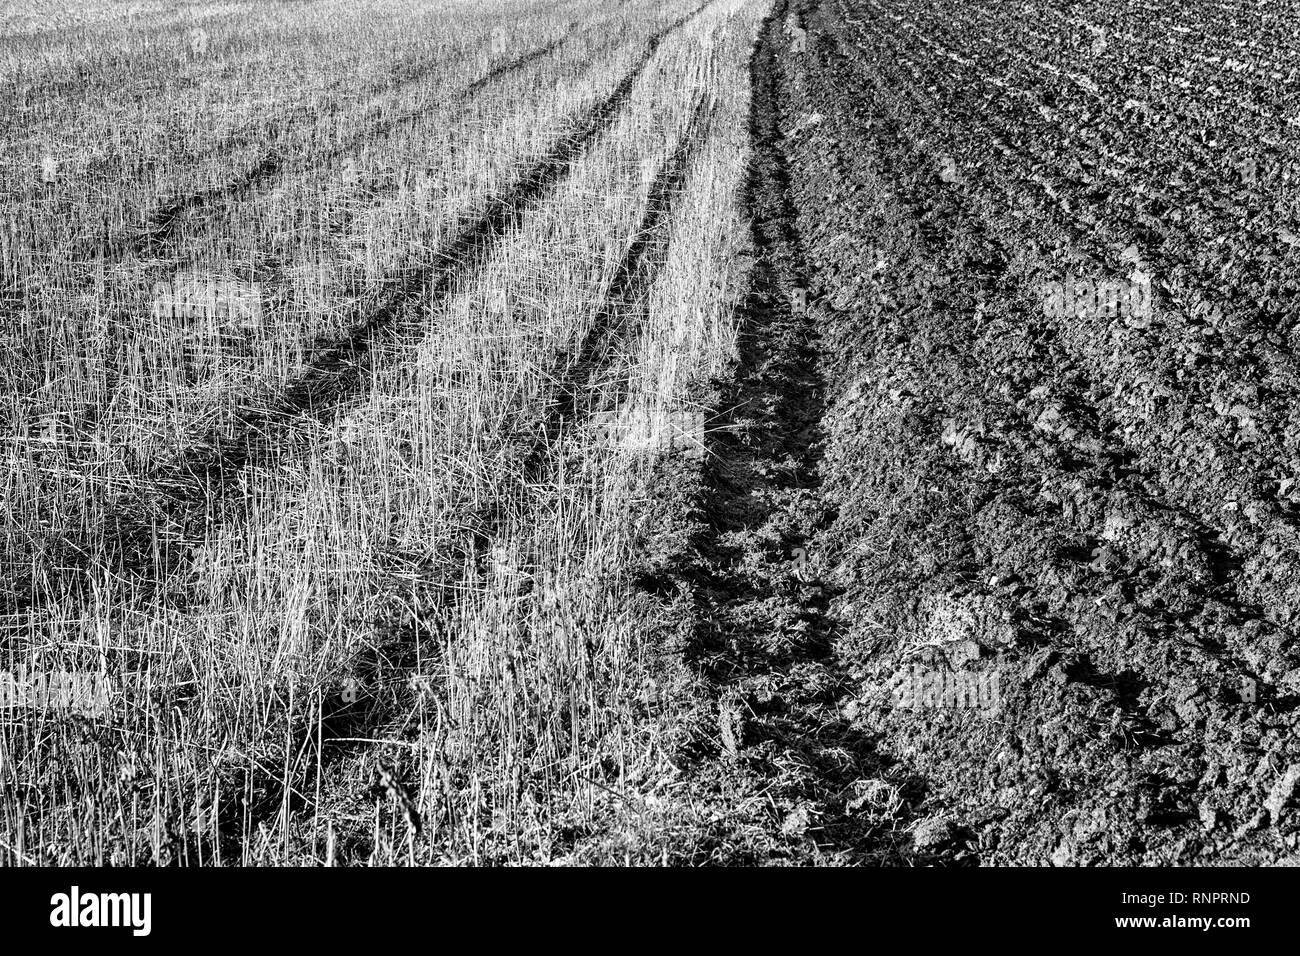 Le sol labouré et prairie, Germany, Europe Banque D'Images